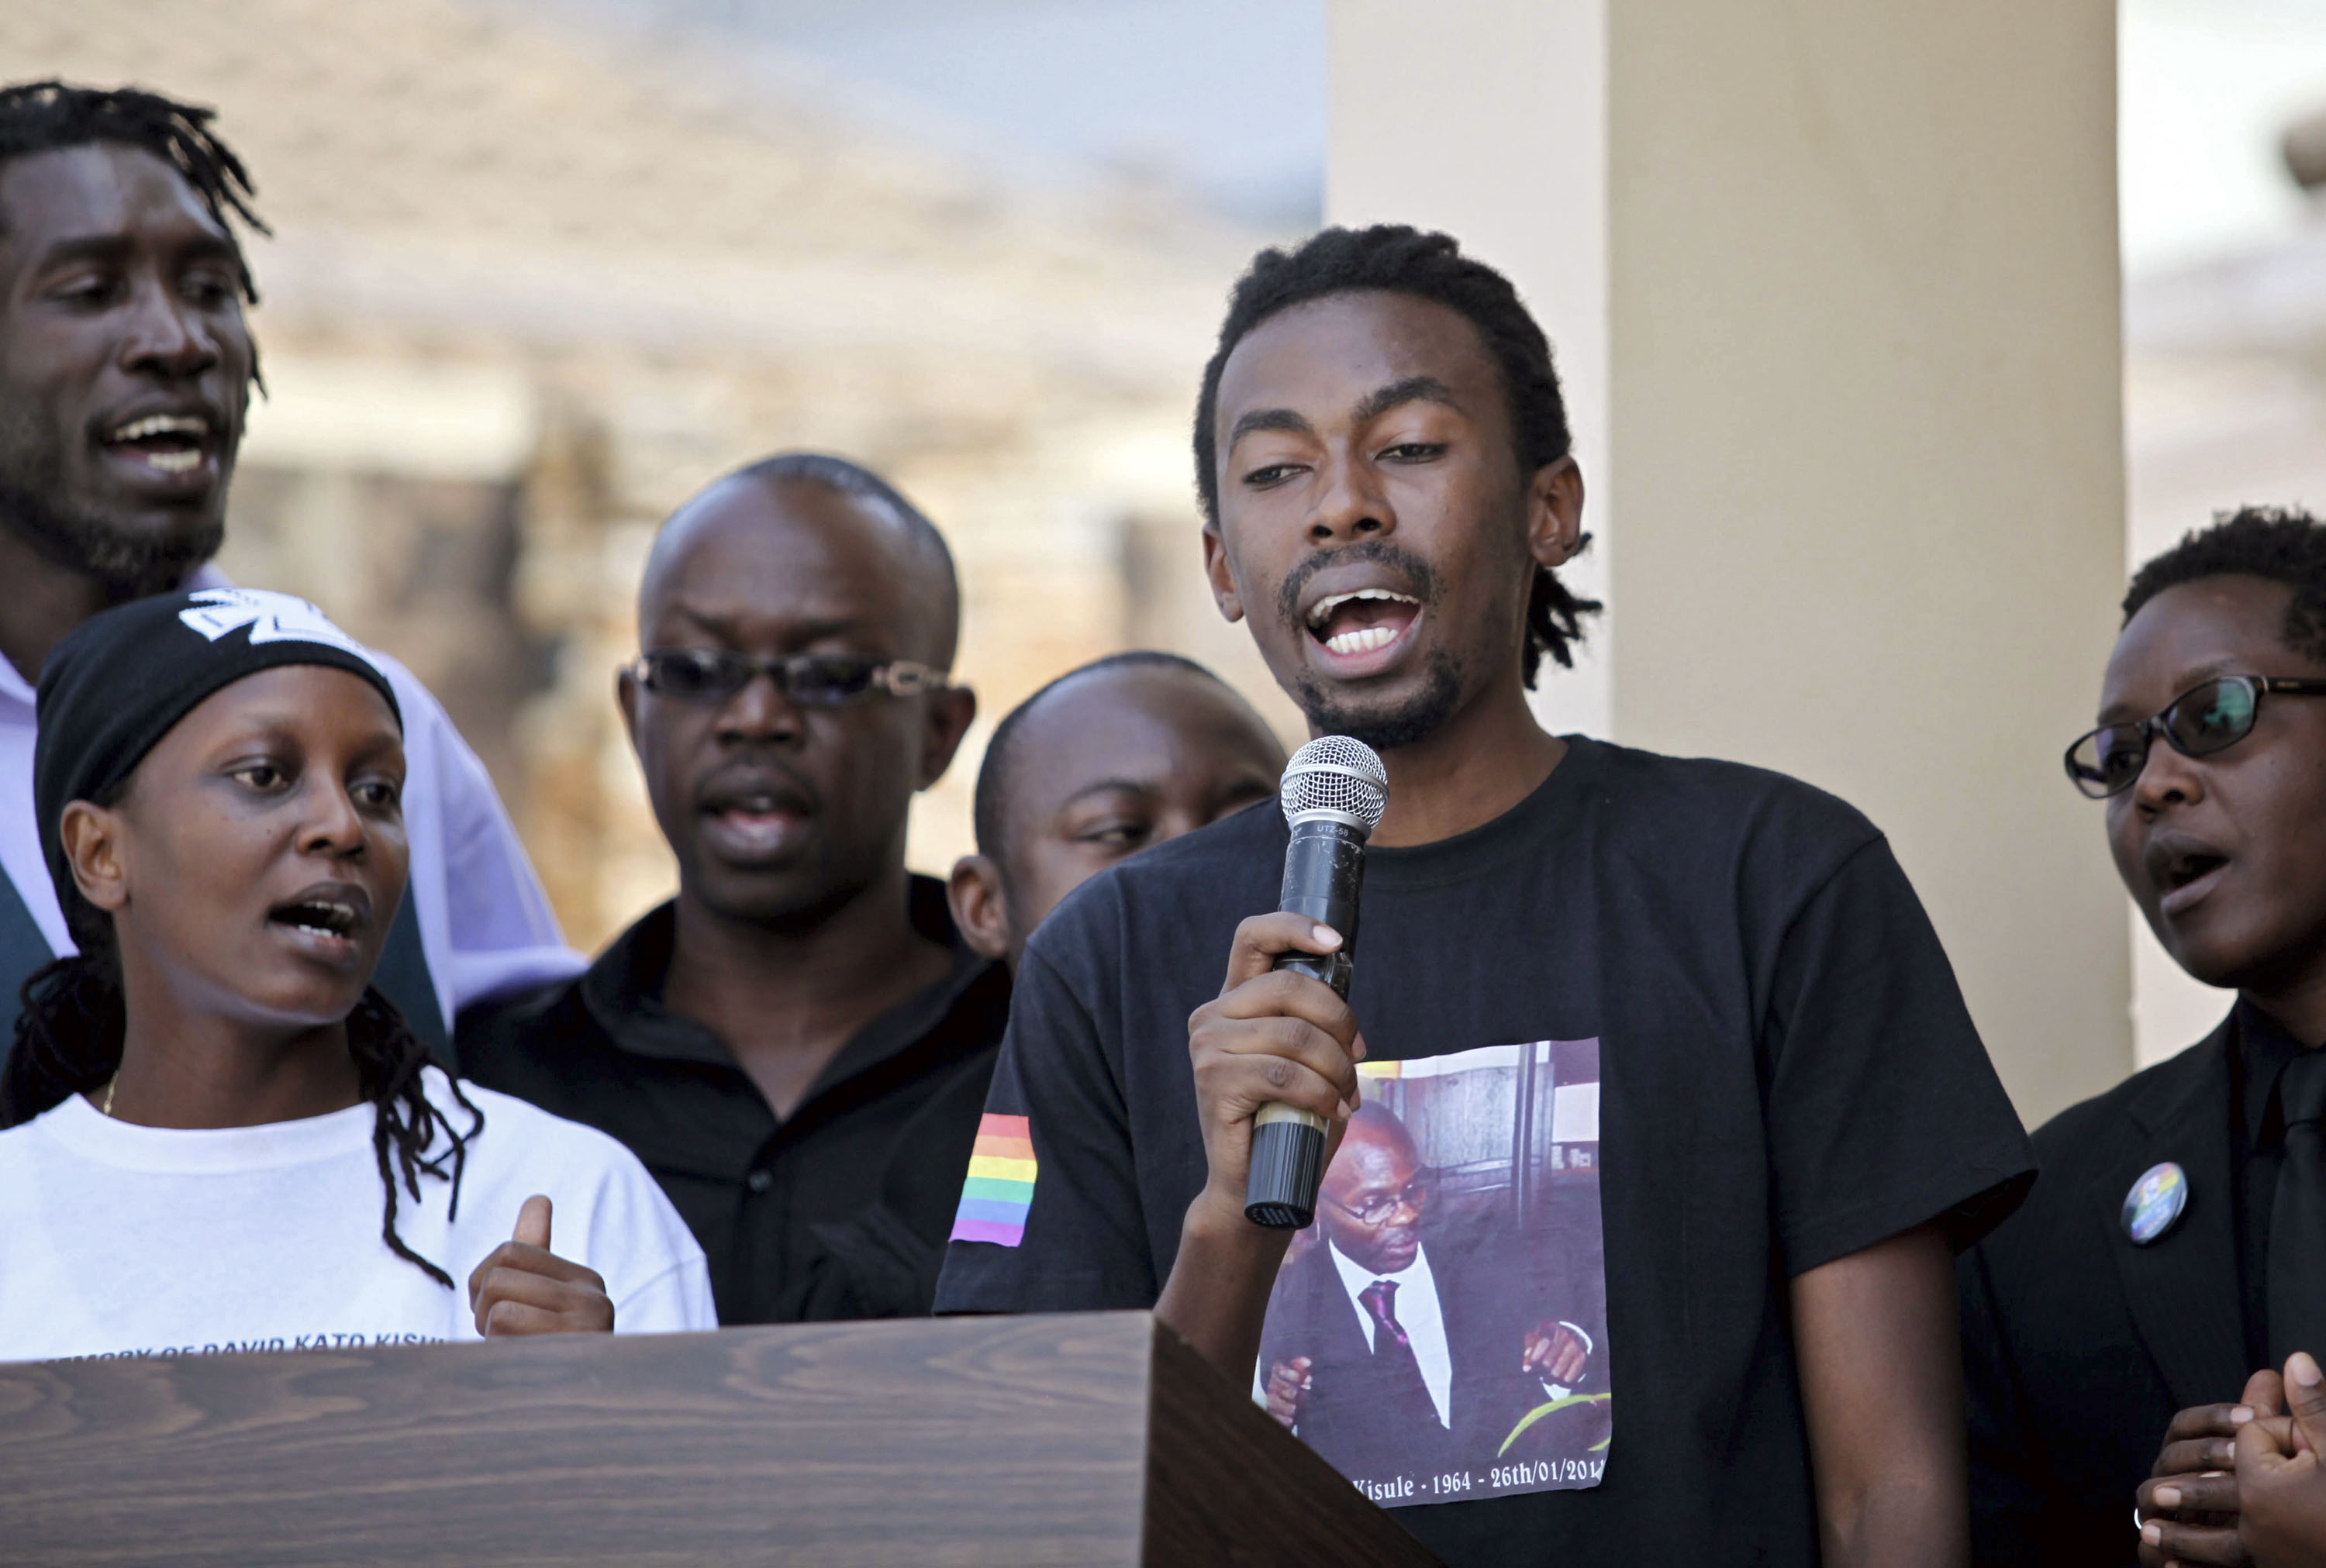 Ουγκάντα: «Εκτός» η θανατική ποινή απ’ το νομοσχέδιο περί ομοφυλοφίλων